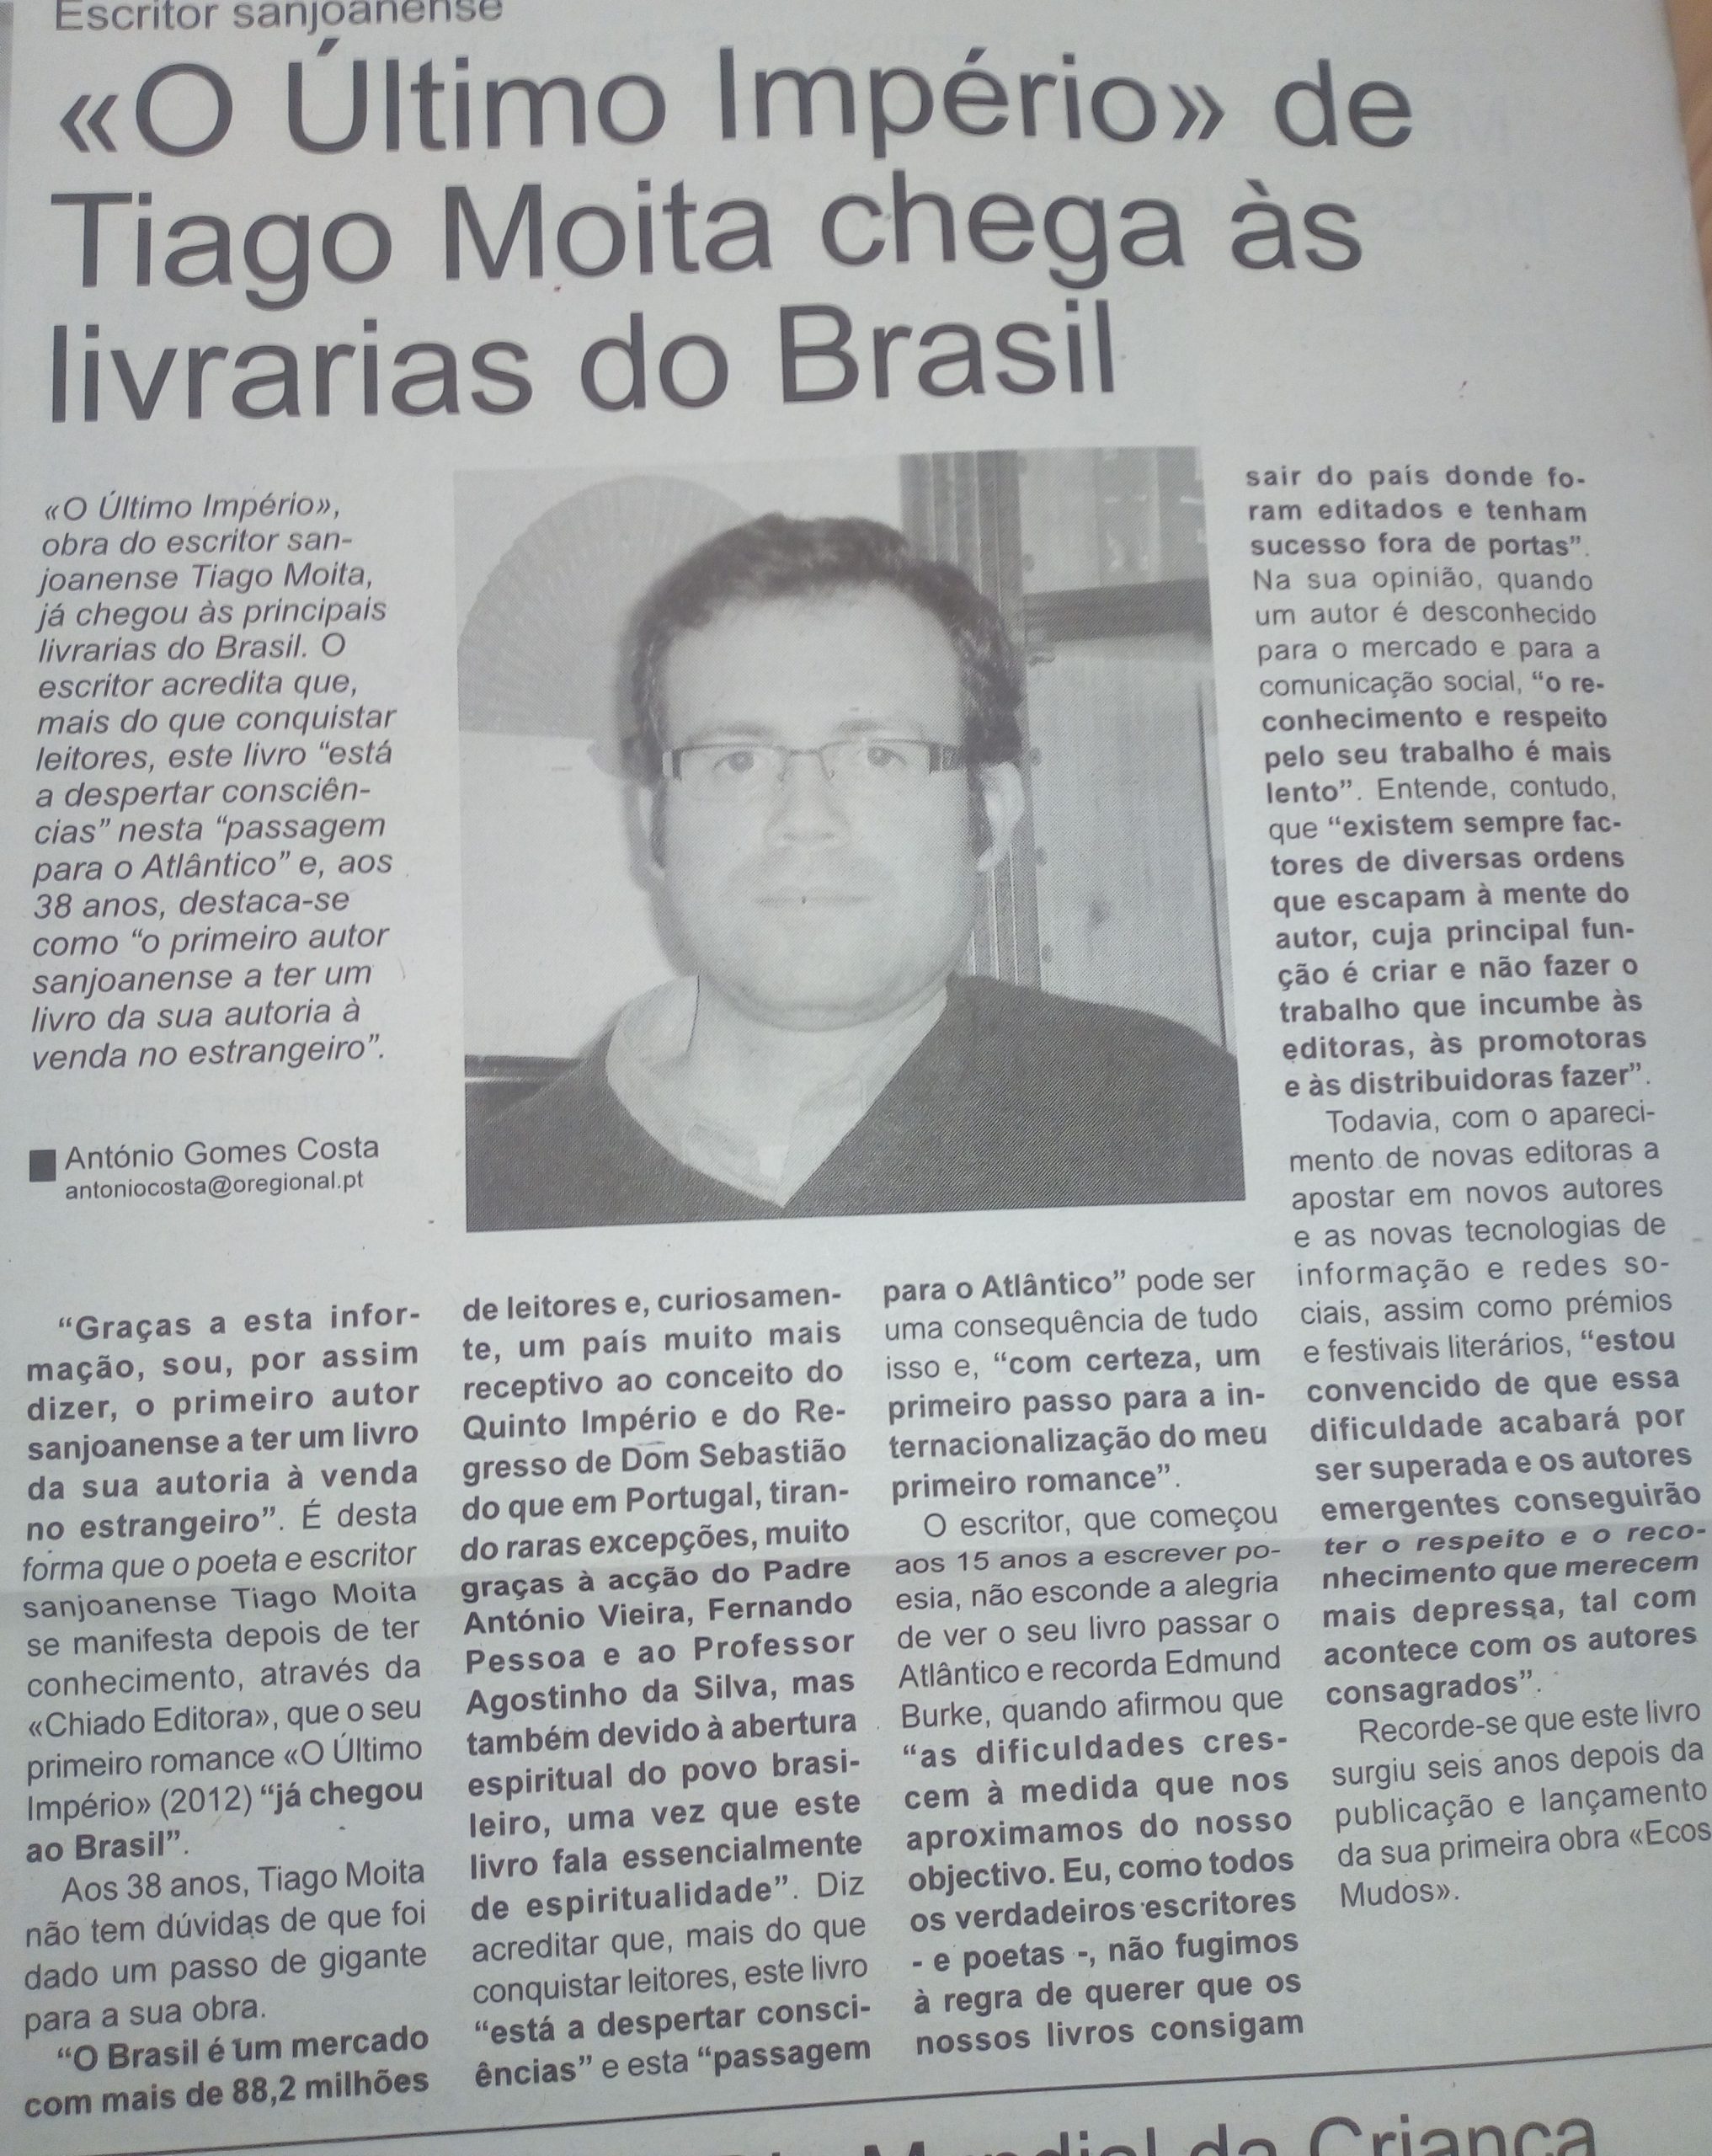 09. Notícia da chegada de O ÚLTIMO IMPÉRIO ao Brasil (20 de Junho de 2013)